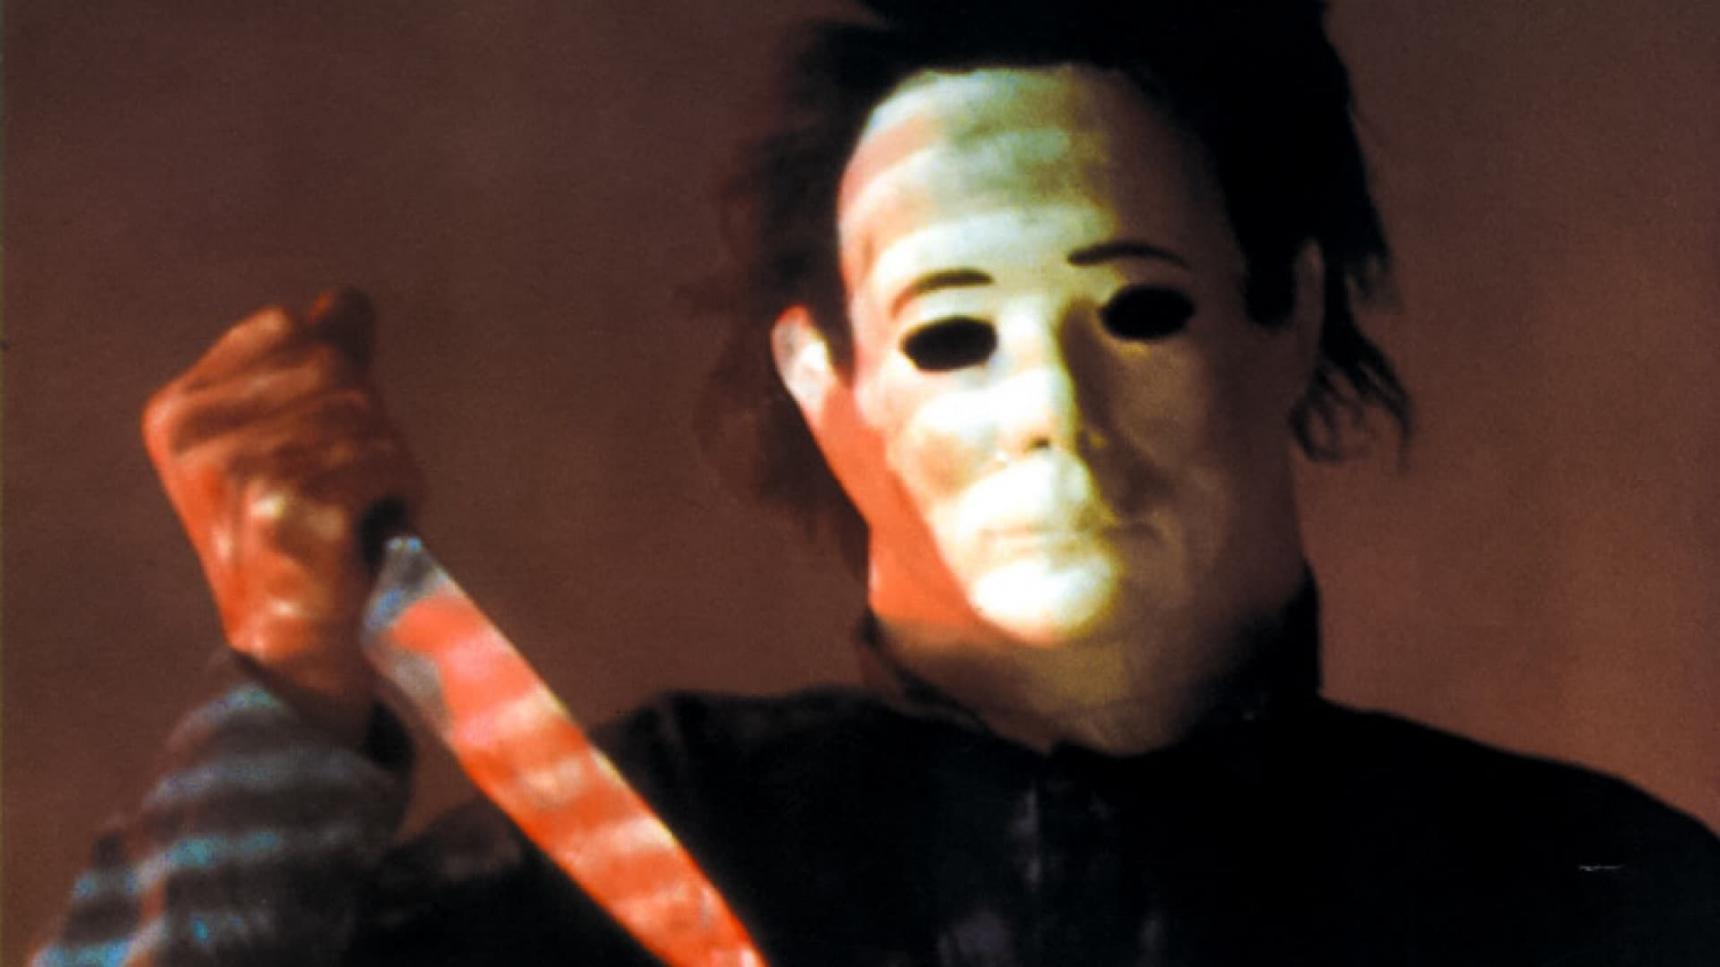 Fondo de pantalla de la película Halloween 4: El regreso de Michael Myers en Cuevana 3 gratis